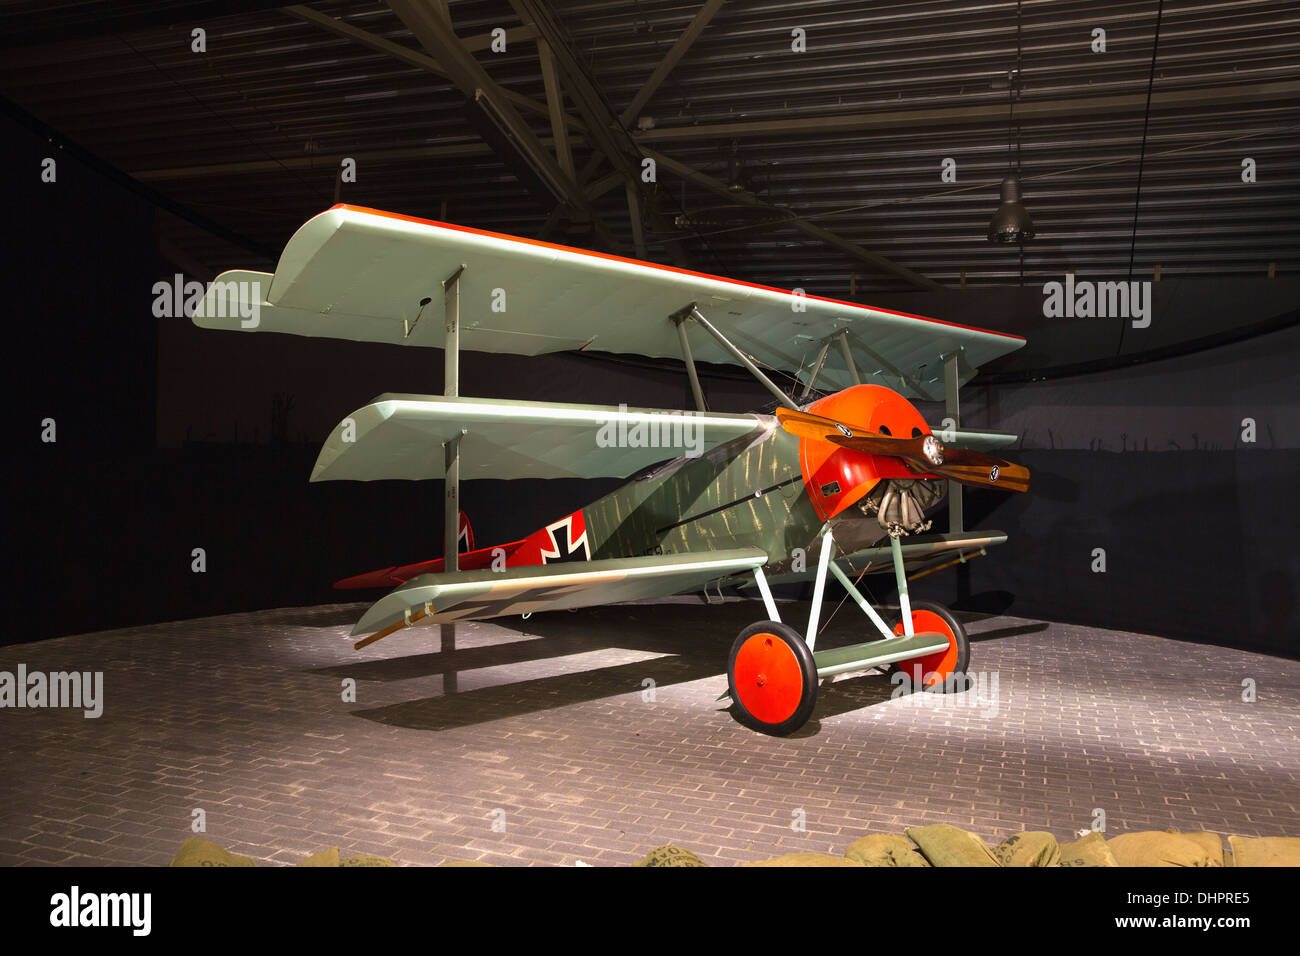 Pays-bas, Lelystad, Aviodrome, musée d'histoire de l'aviation. Fokker DR-1 triplan de modèle à partir de 1917 Banque D'Images